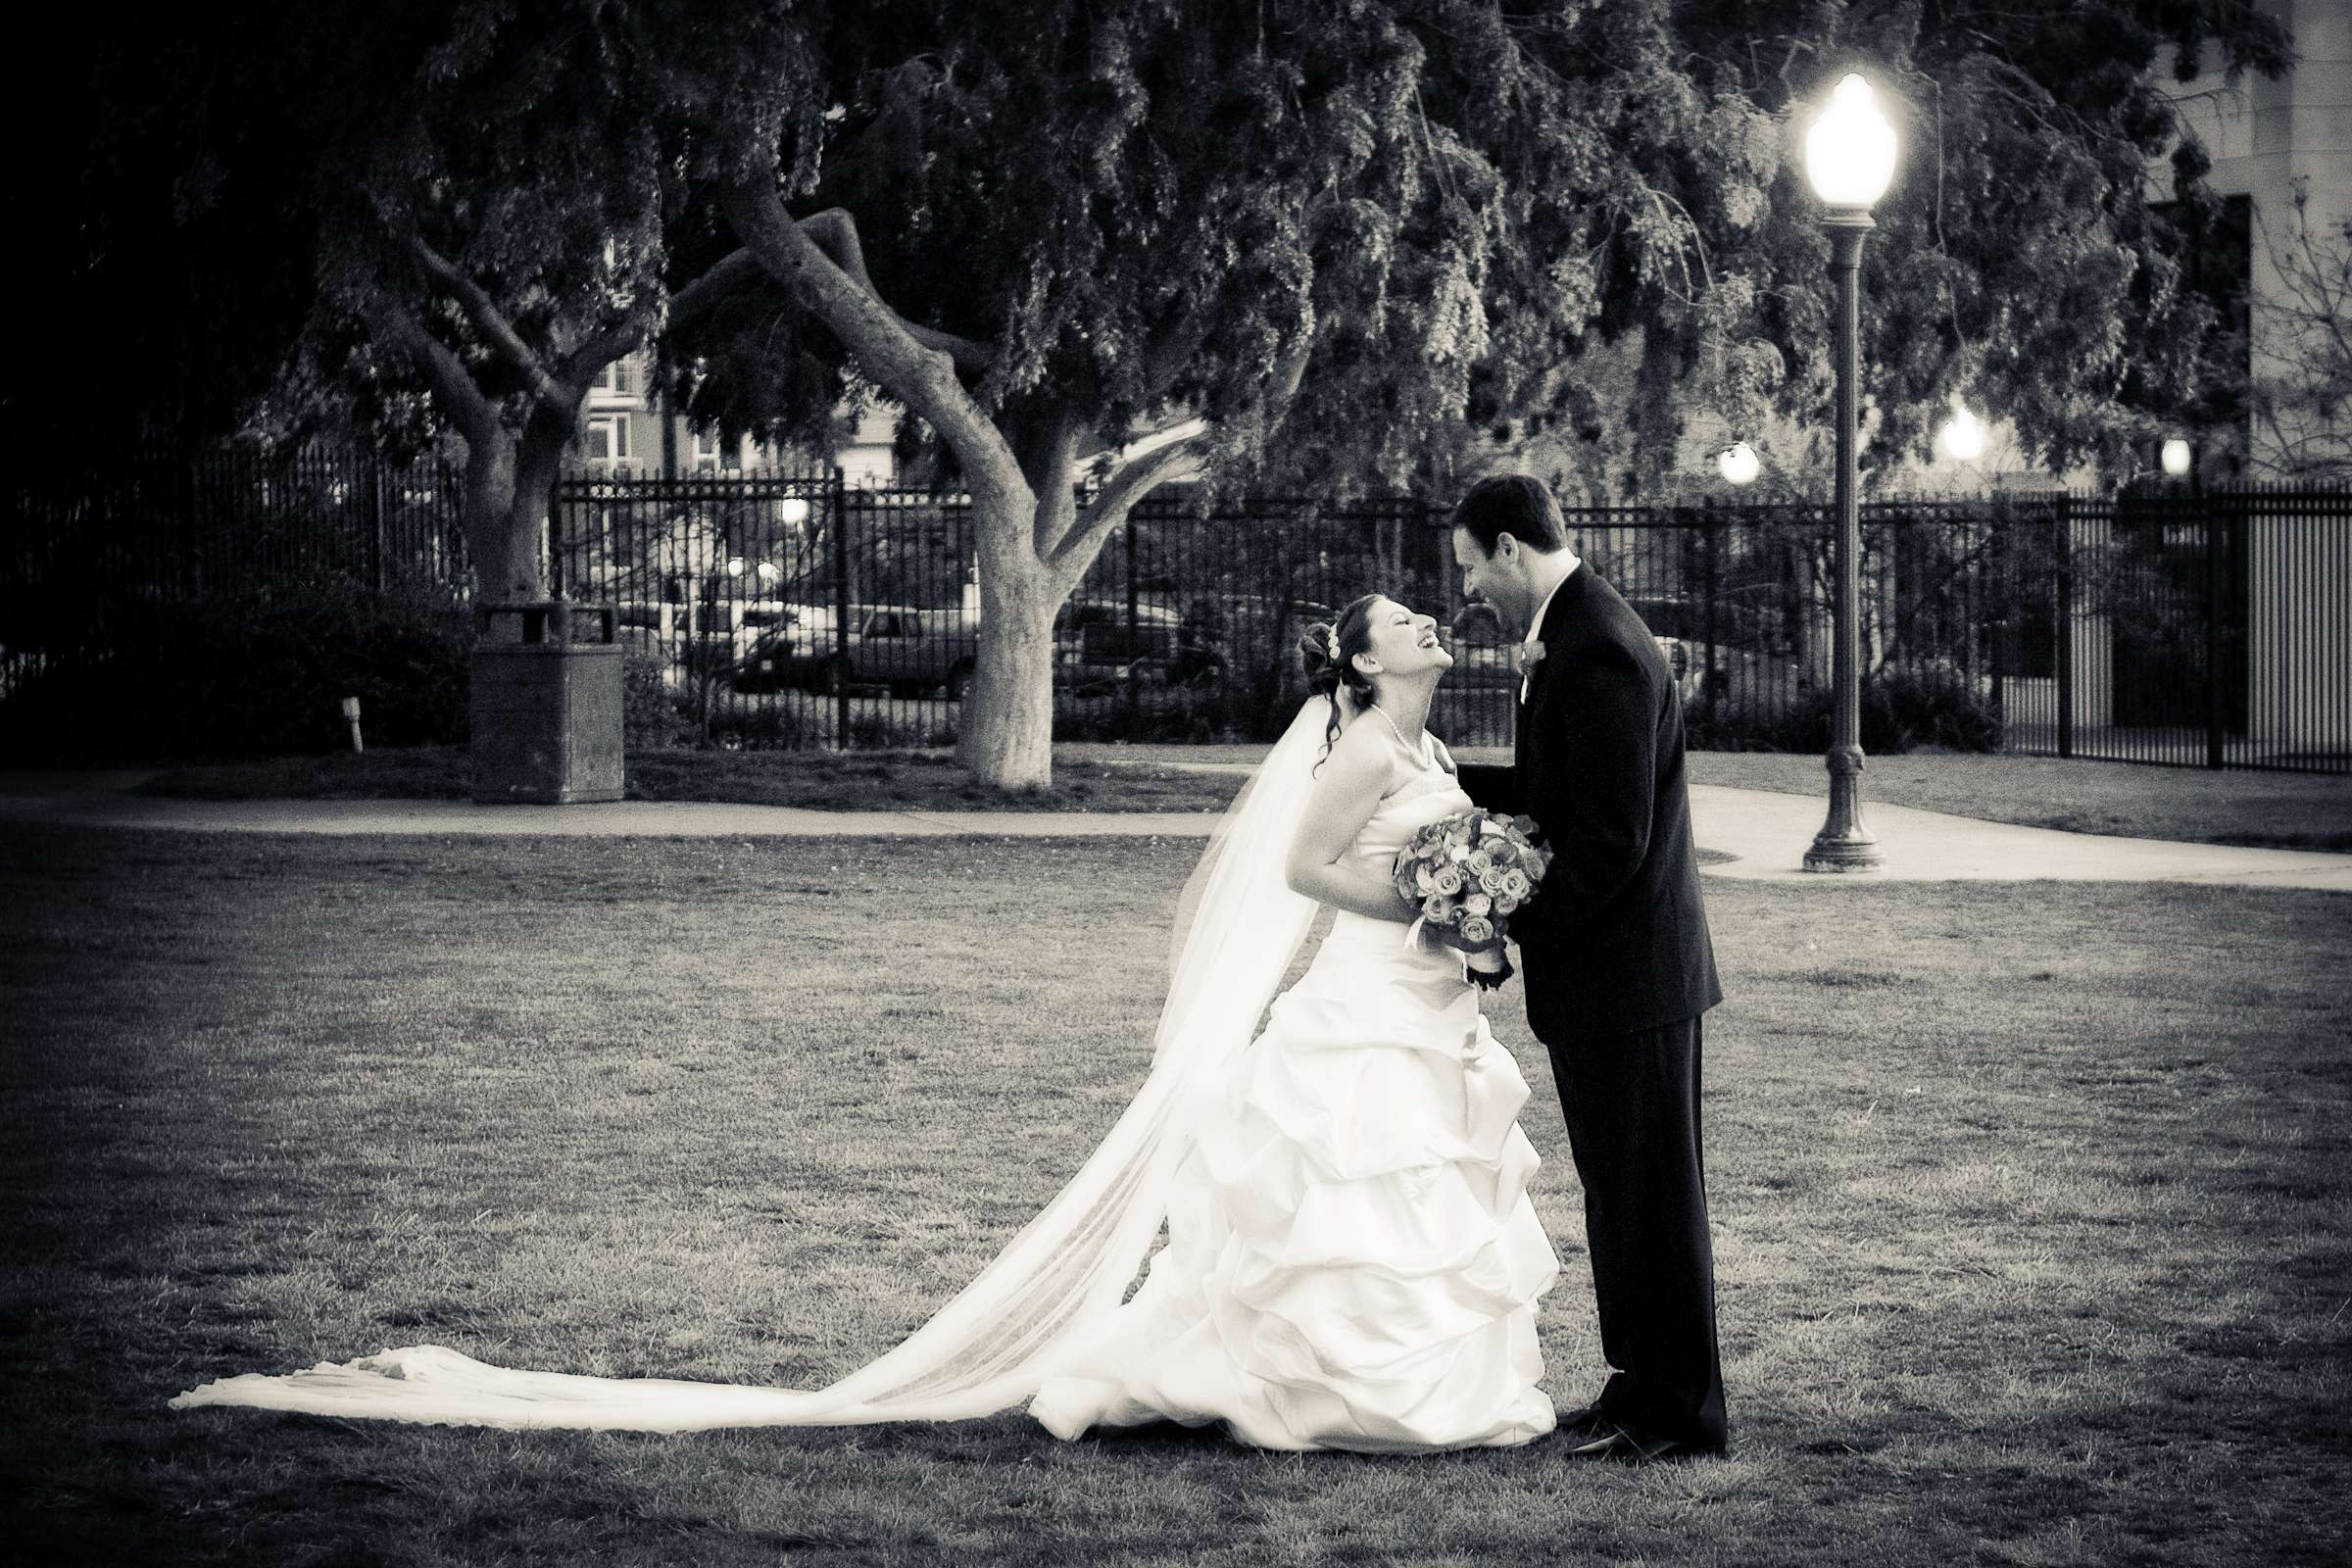 El Cortez Wedding, Laura and David Wedding Photo #2 by True Photography